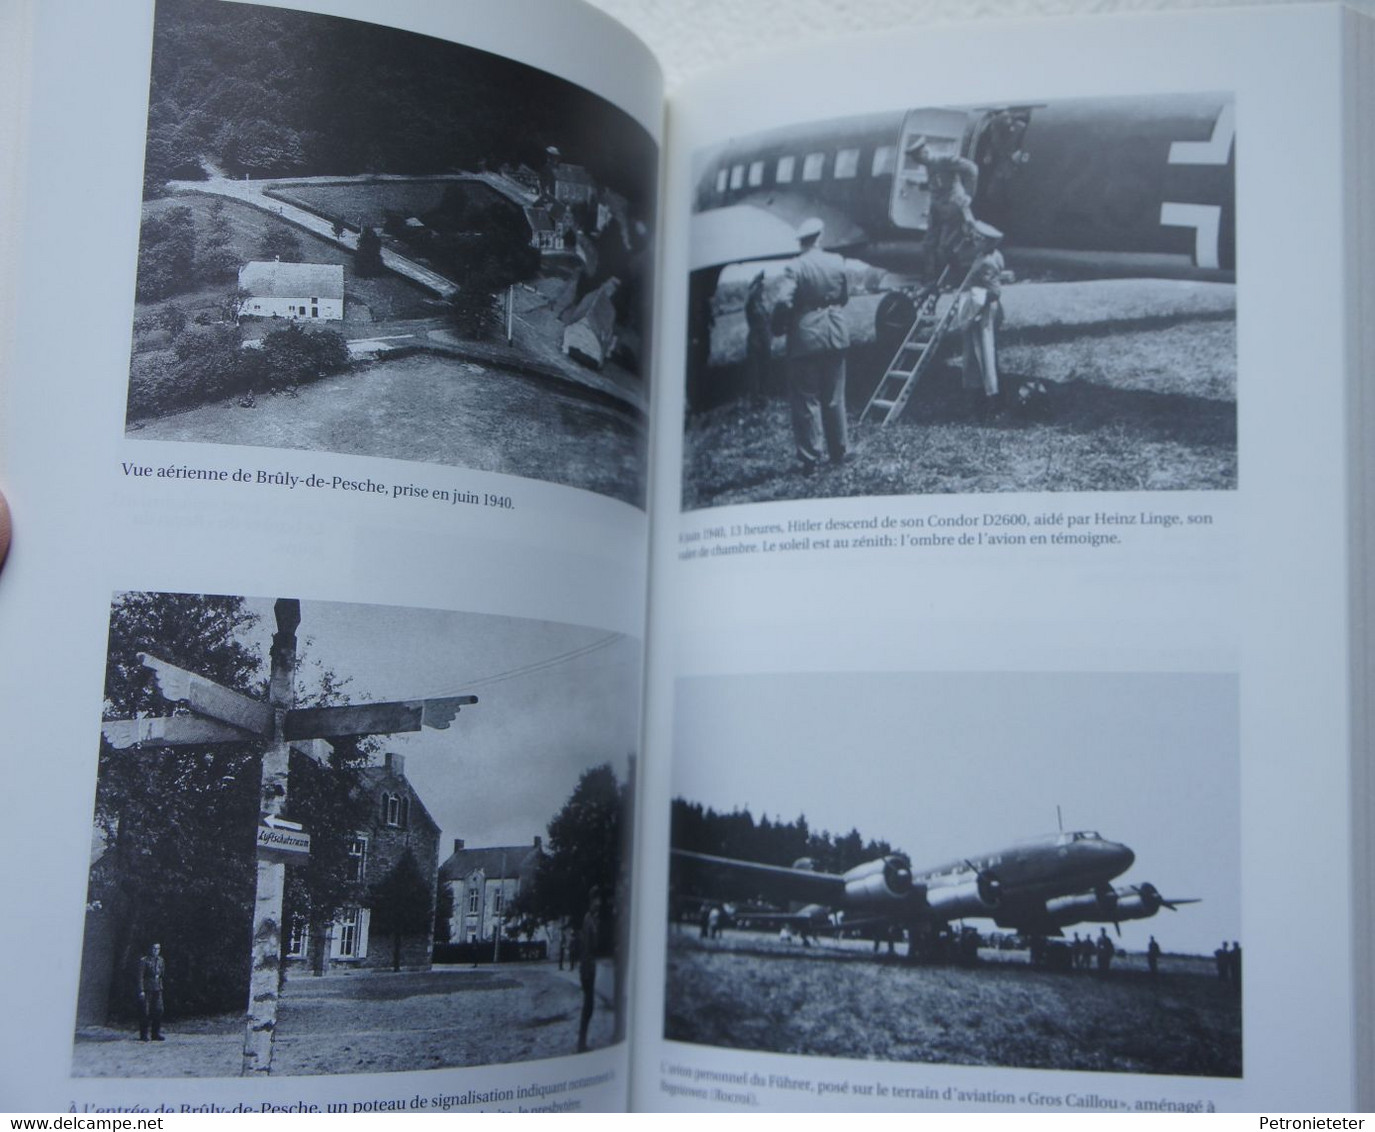 Livre Au Ravin du Loup 1940 QG Hitler Belgique Brûly de Pesche Région Chimay Couvin Rièzes Rocroi Guerre